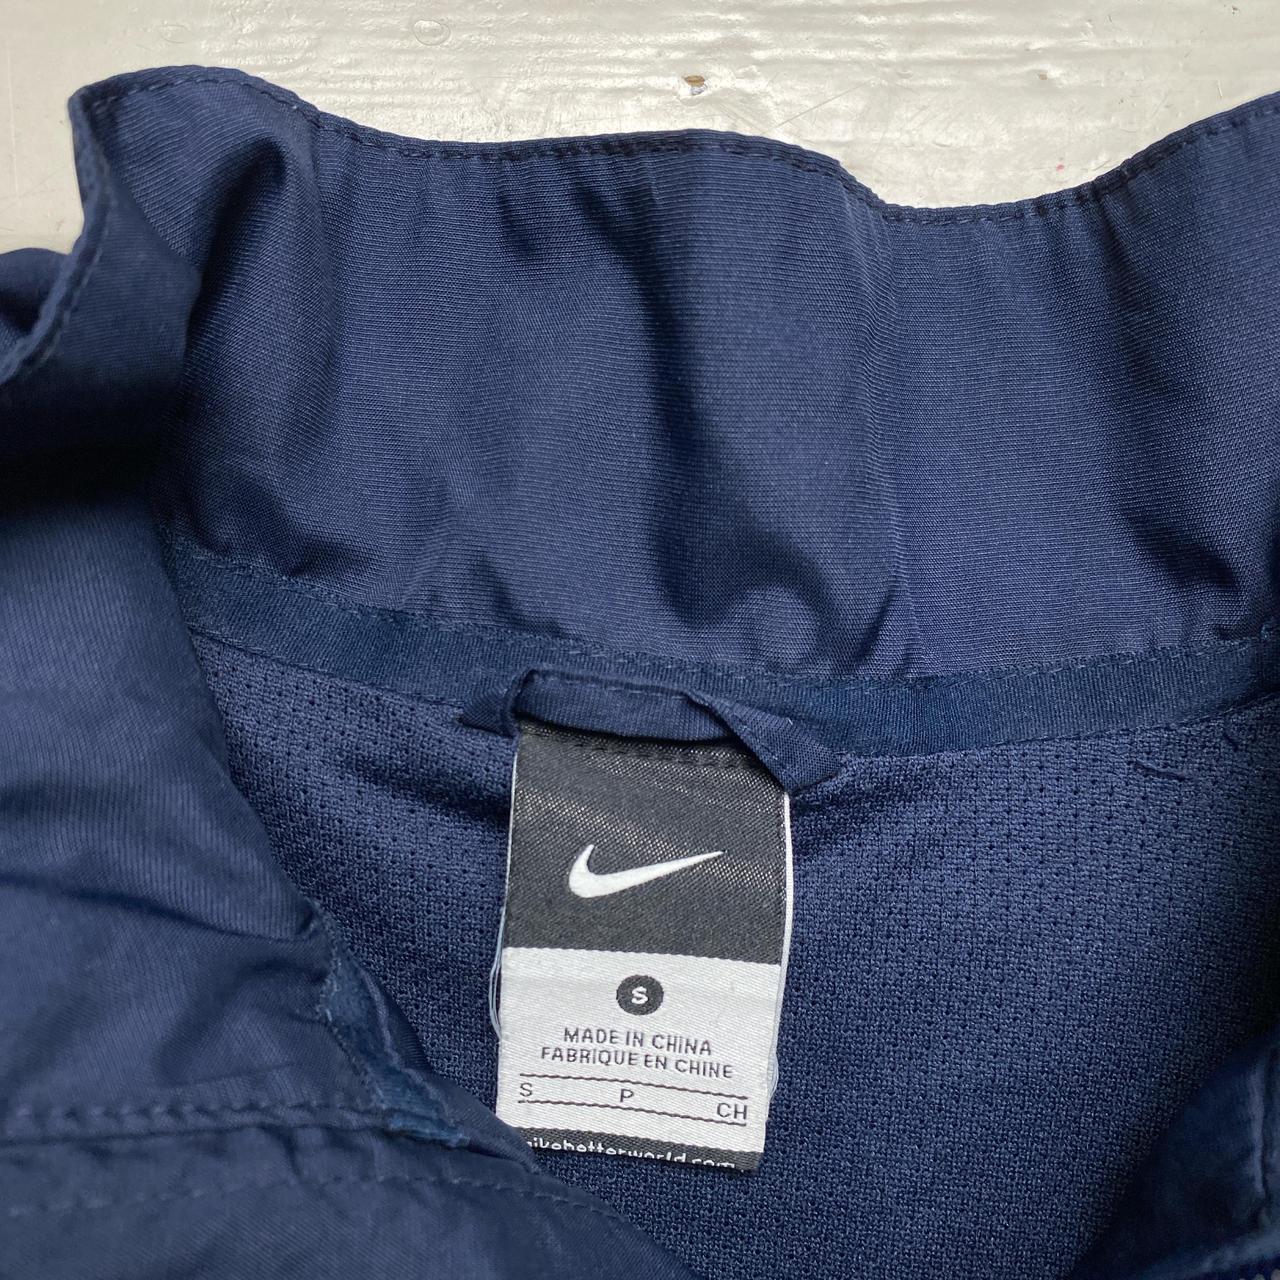 Arsenal Nike Tracksuit Shell Jacket